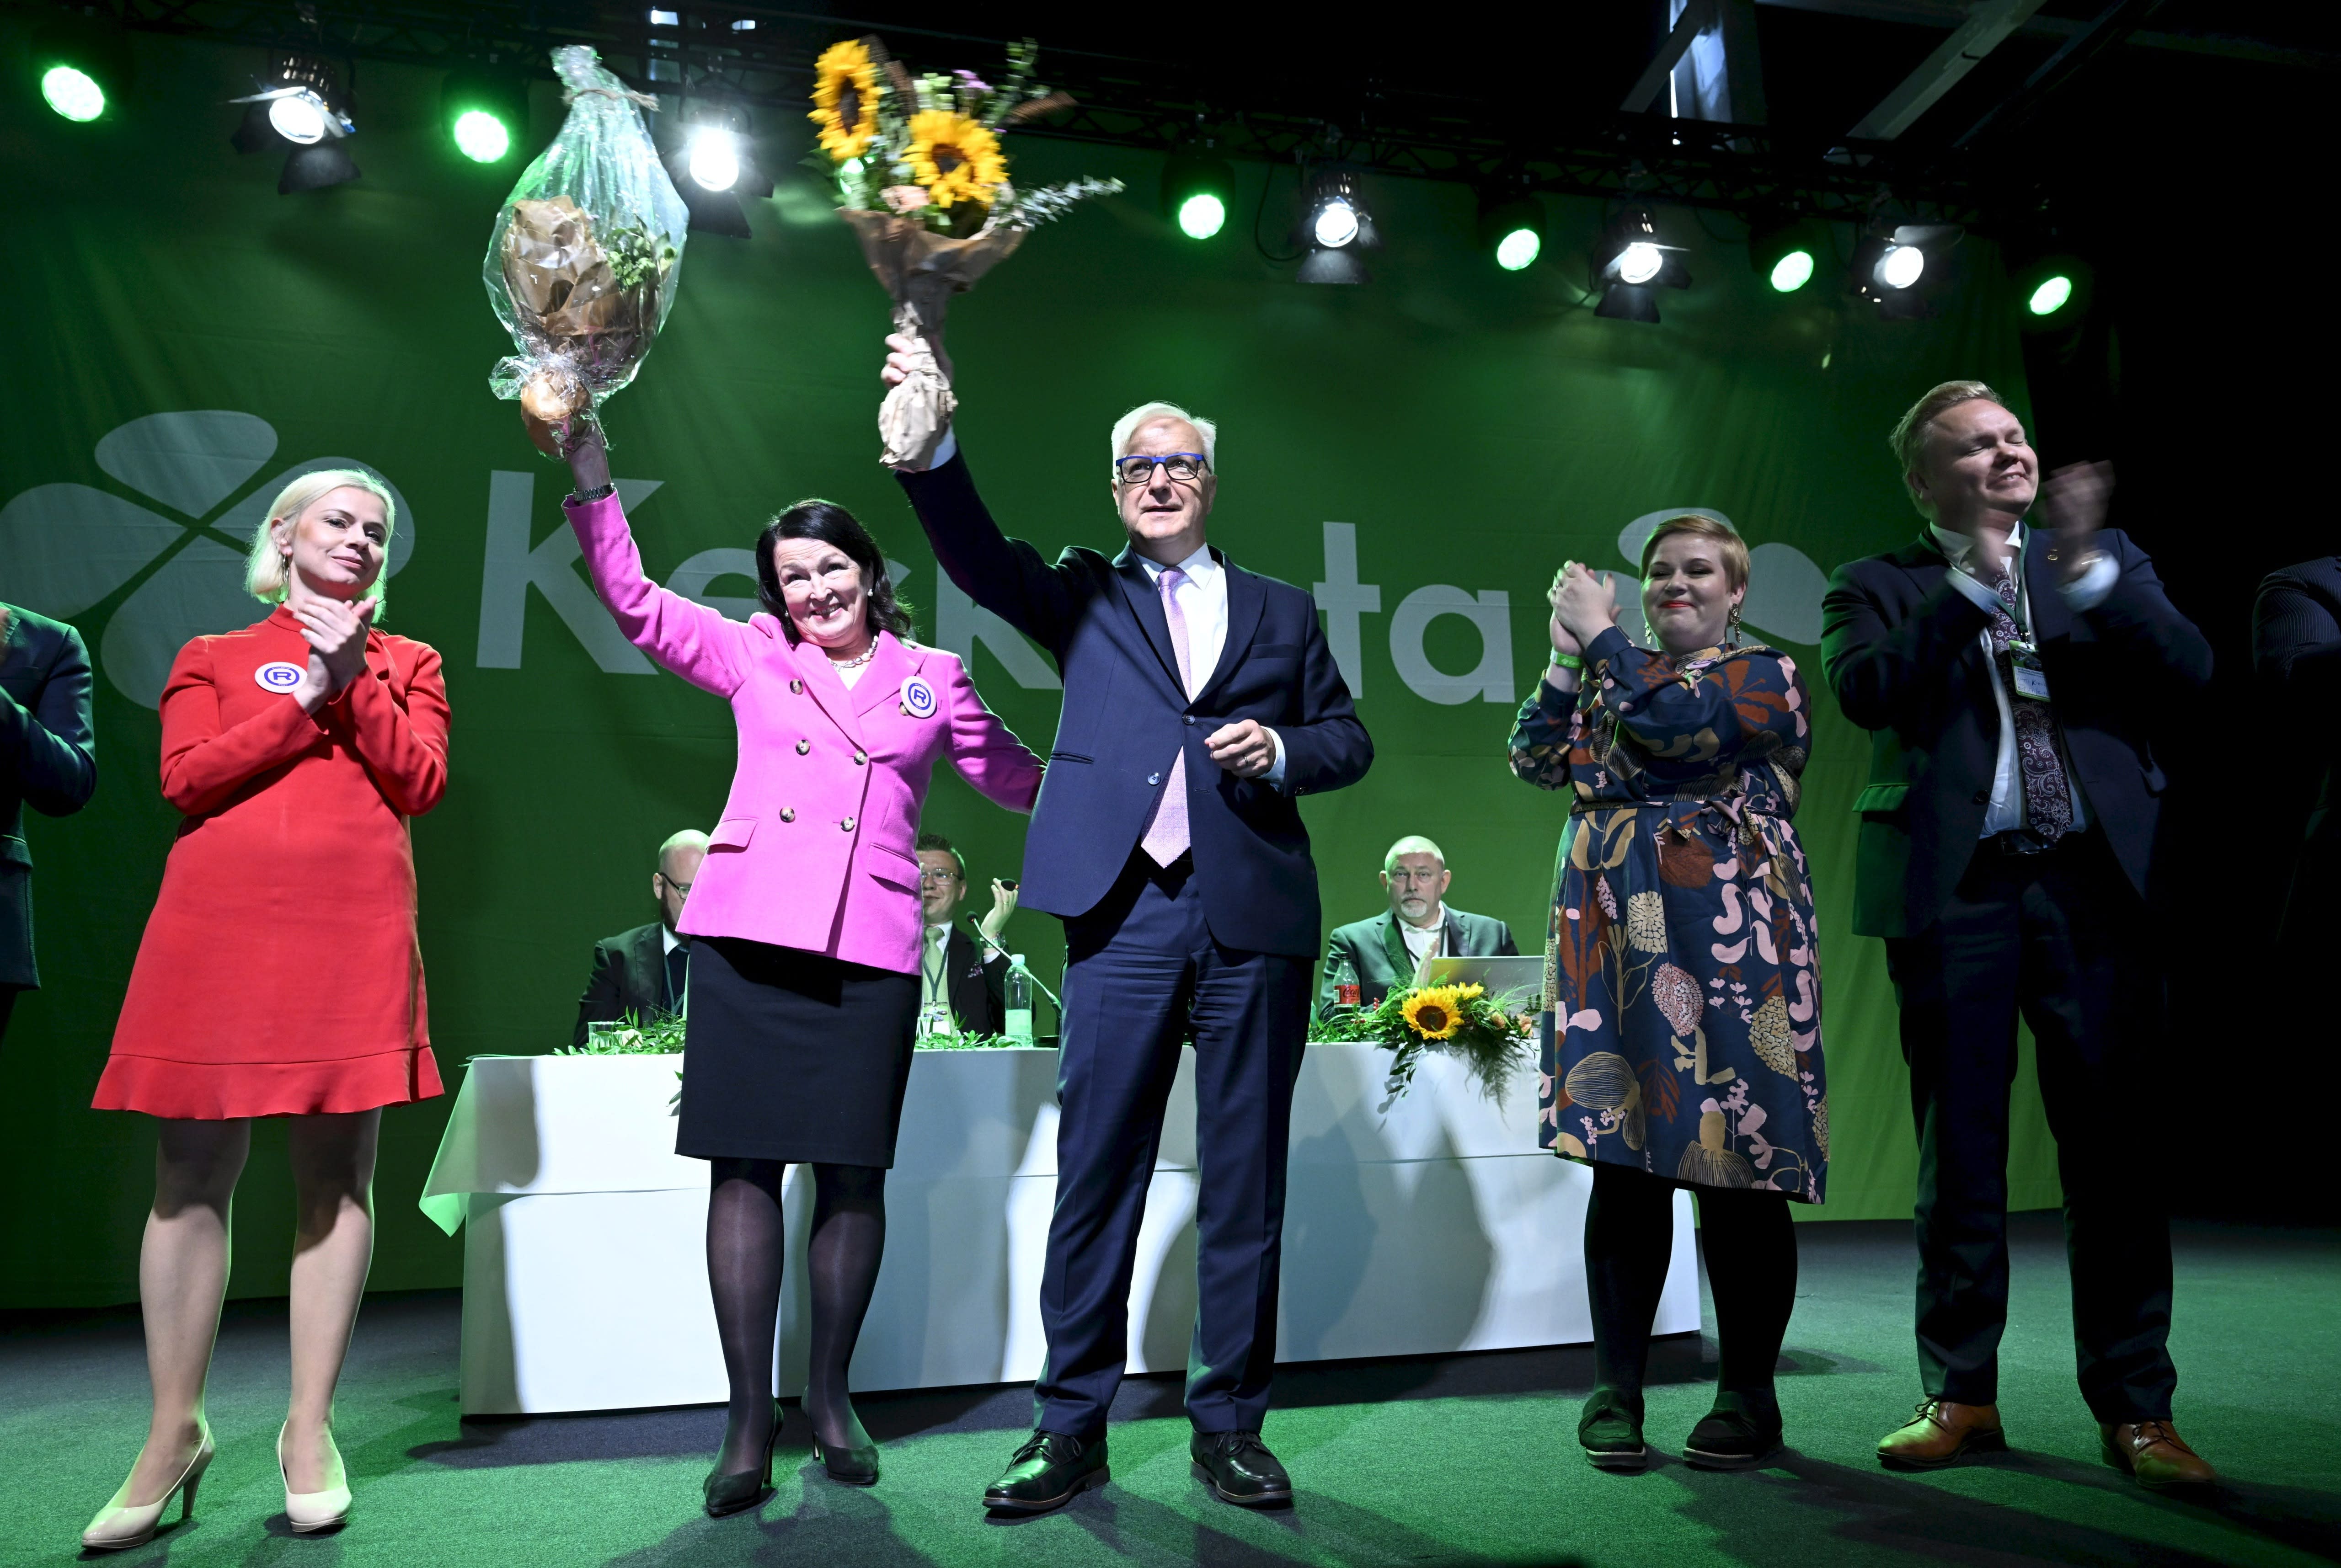 El centro apoya a Olli Rehn como candidato presidencial